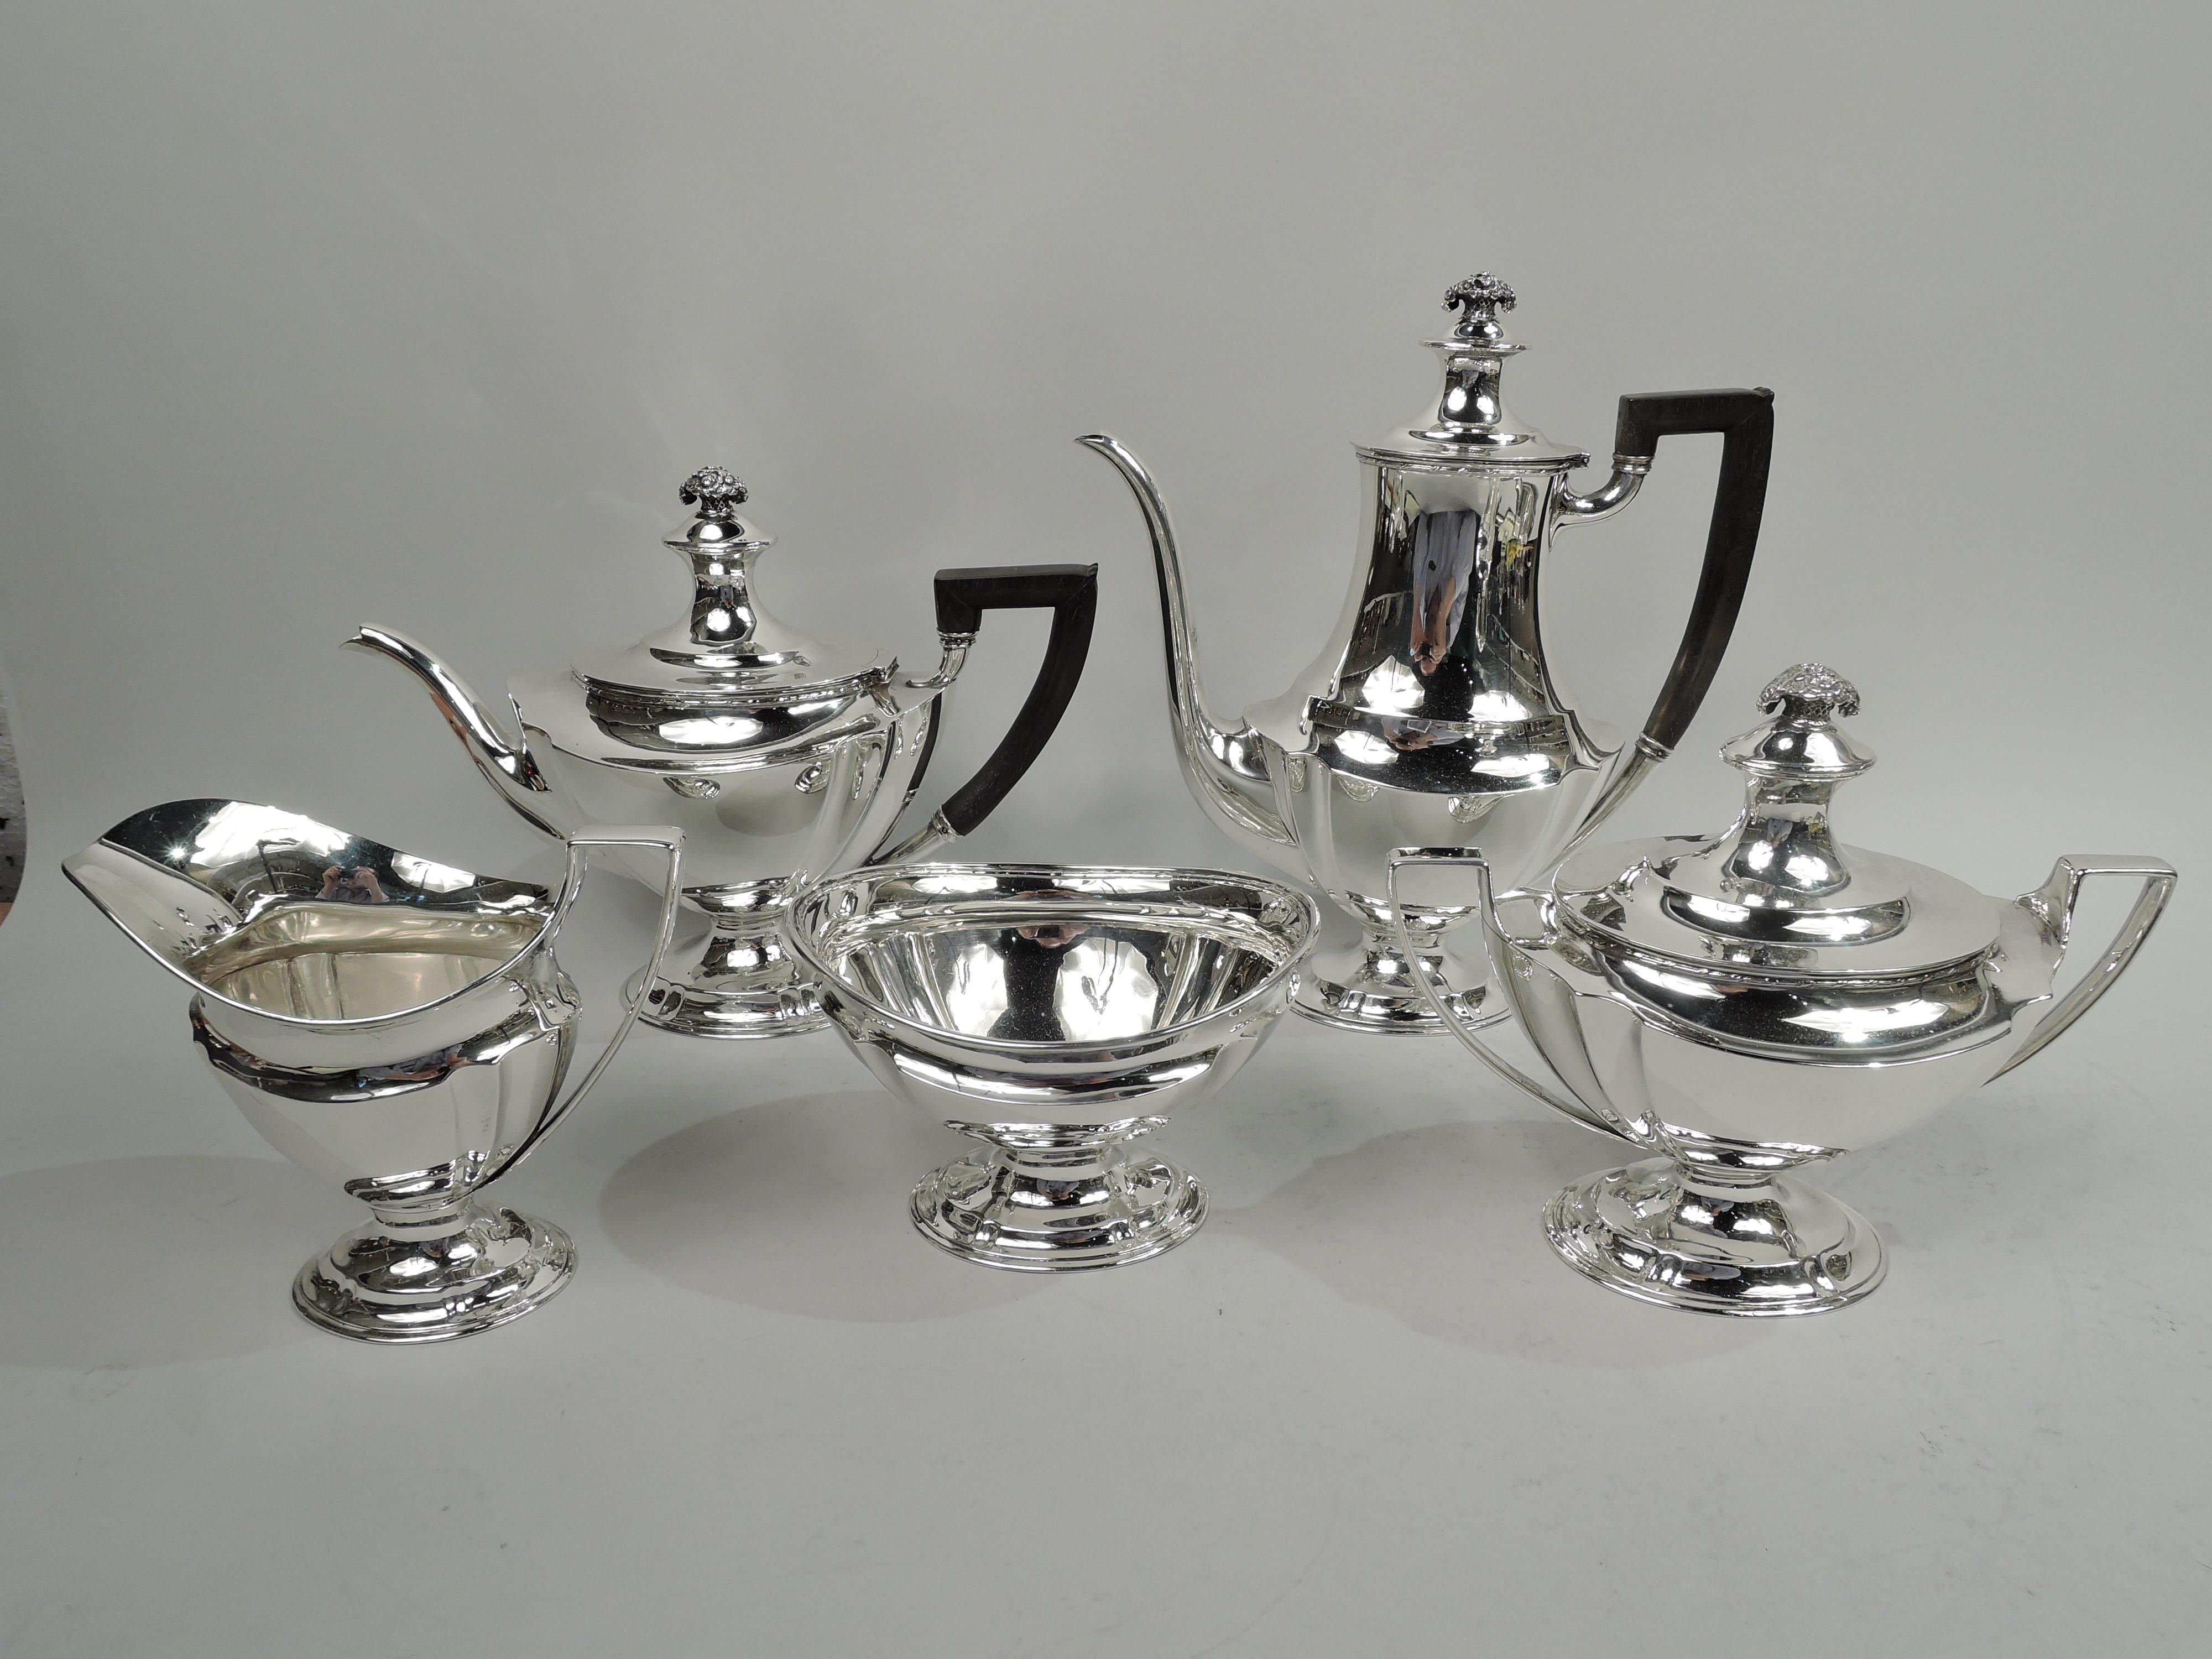 Edwardian Regency Sterling Silber Kaffeeservice. Hergestellt von Tiffany & Co. in New York, ca. 1910. Dieses Set besteht aus Kaffeekanne, Teekanne, Milchkännchen, Zucker und Abfallbehälter. Spitz zulaufende und geriffelte eiförmige Körper. Füße